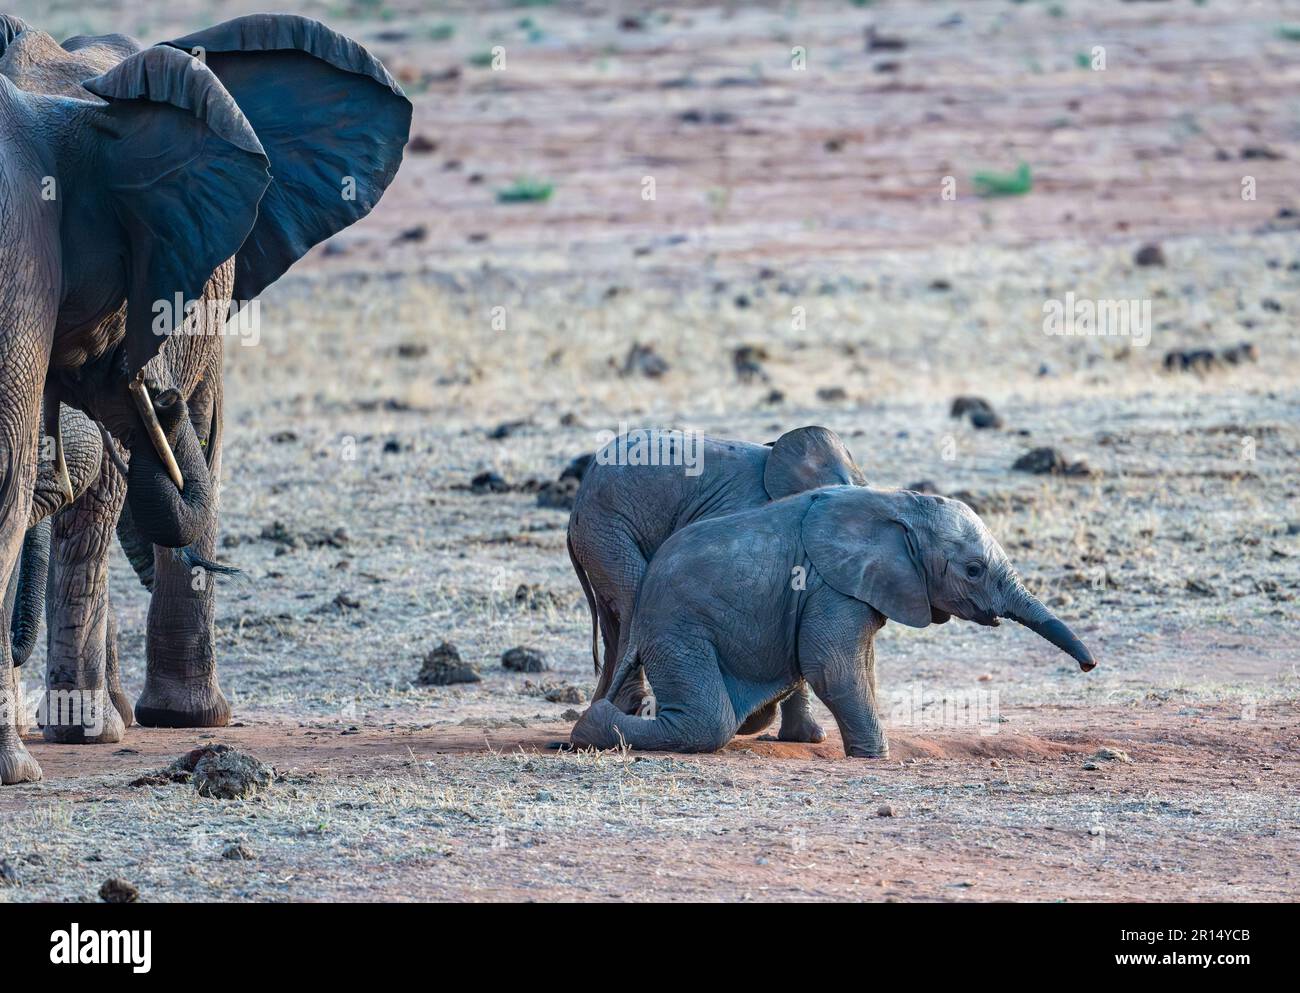 Bambini carini di elefante africano (Loxodonta africana) che giocano oltre gli adulti. Kenya, Africa. Foto Stock